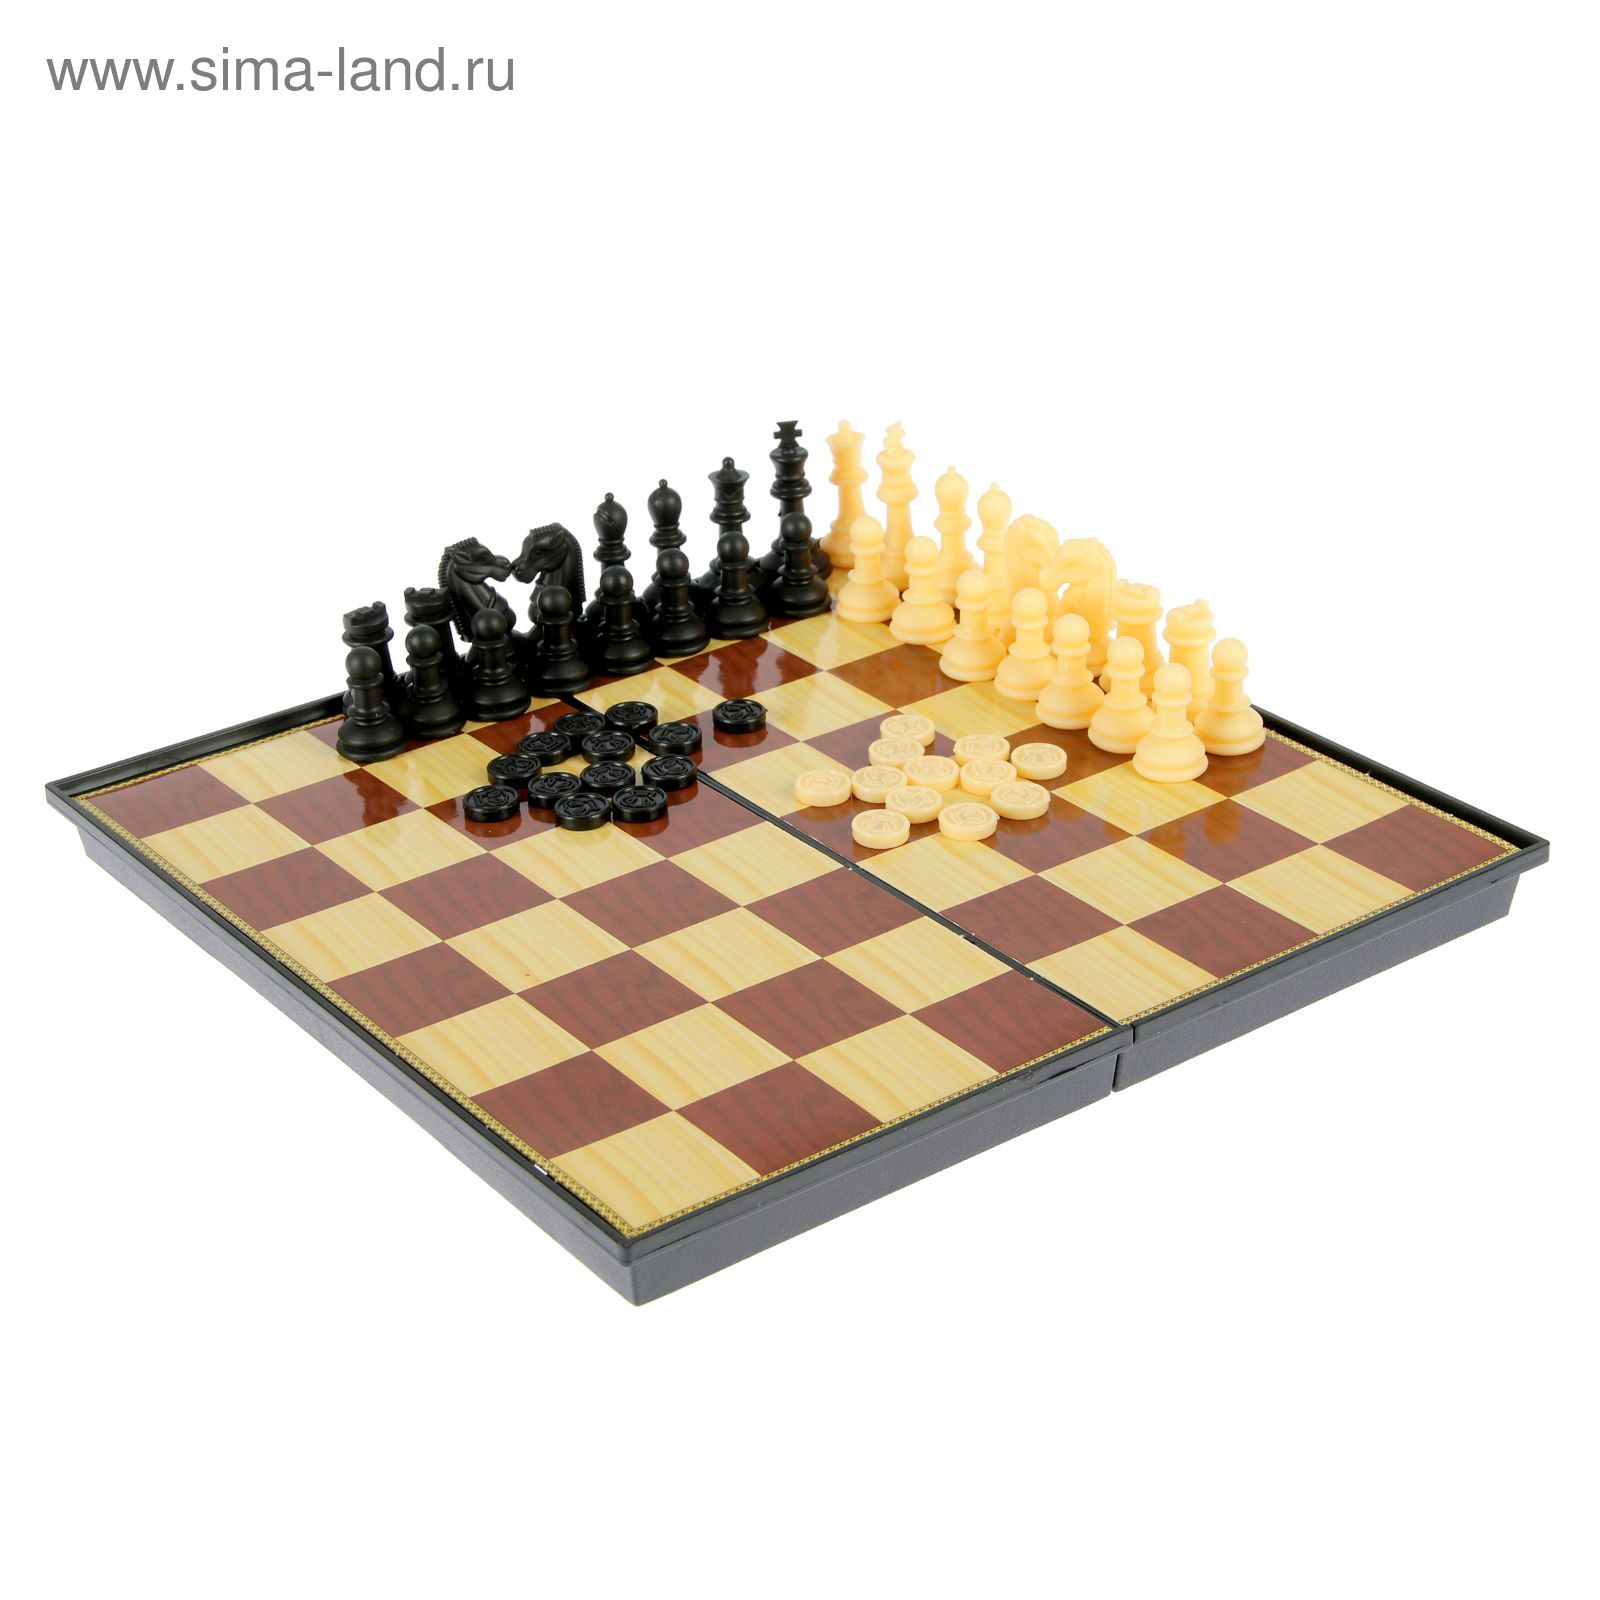 Игра настольная 2 в 1: шашки, шахматы, коричнево-бежевая доска 26 × 26 см, в коробке